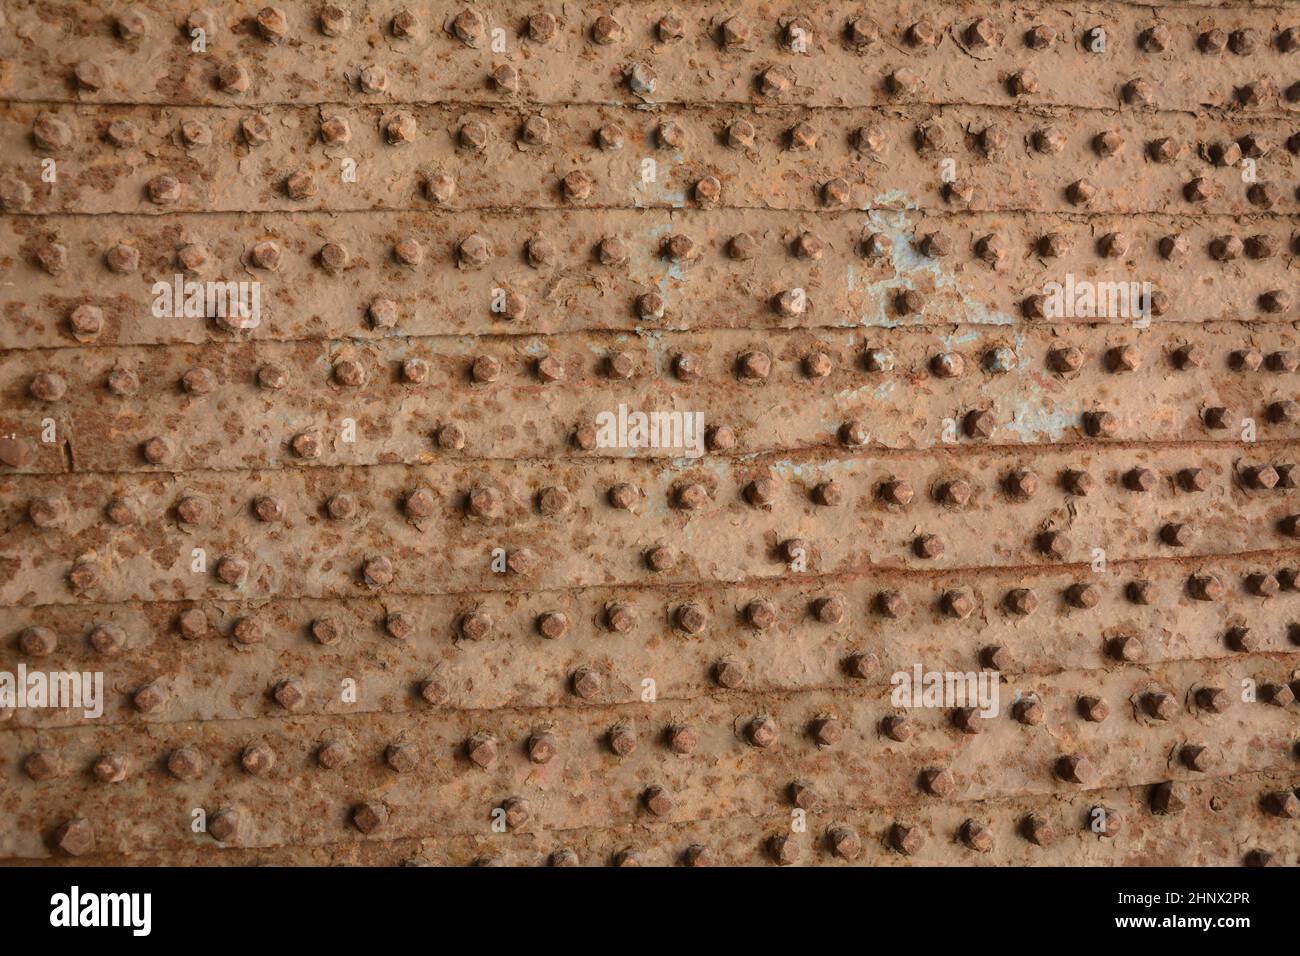 Partie d'anciennes portes métalliques avec motifs moulés.Texture de l'ancienne porte avec des rivets métalliques.Akko (Acre) Israël Banque D'Images